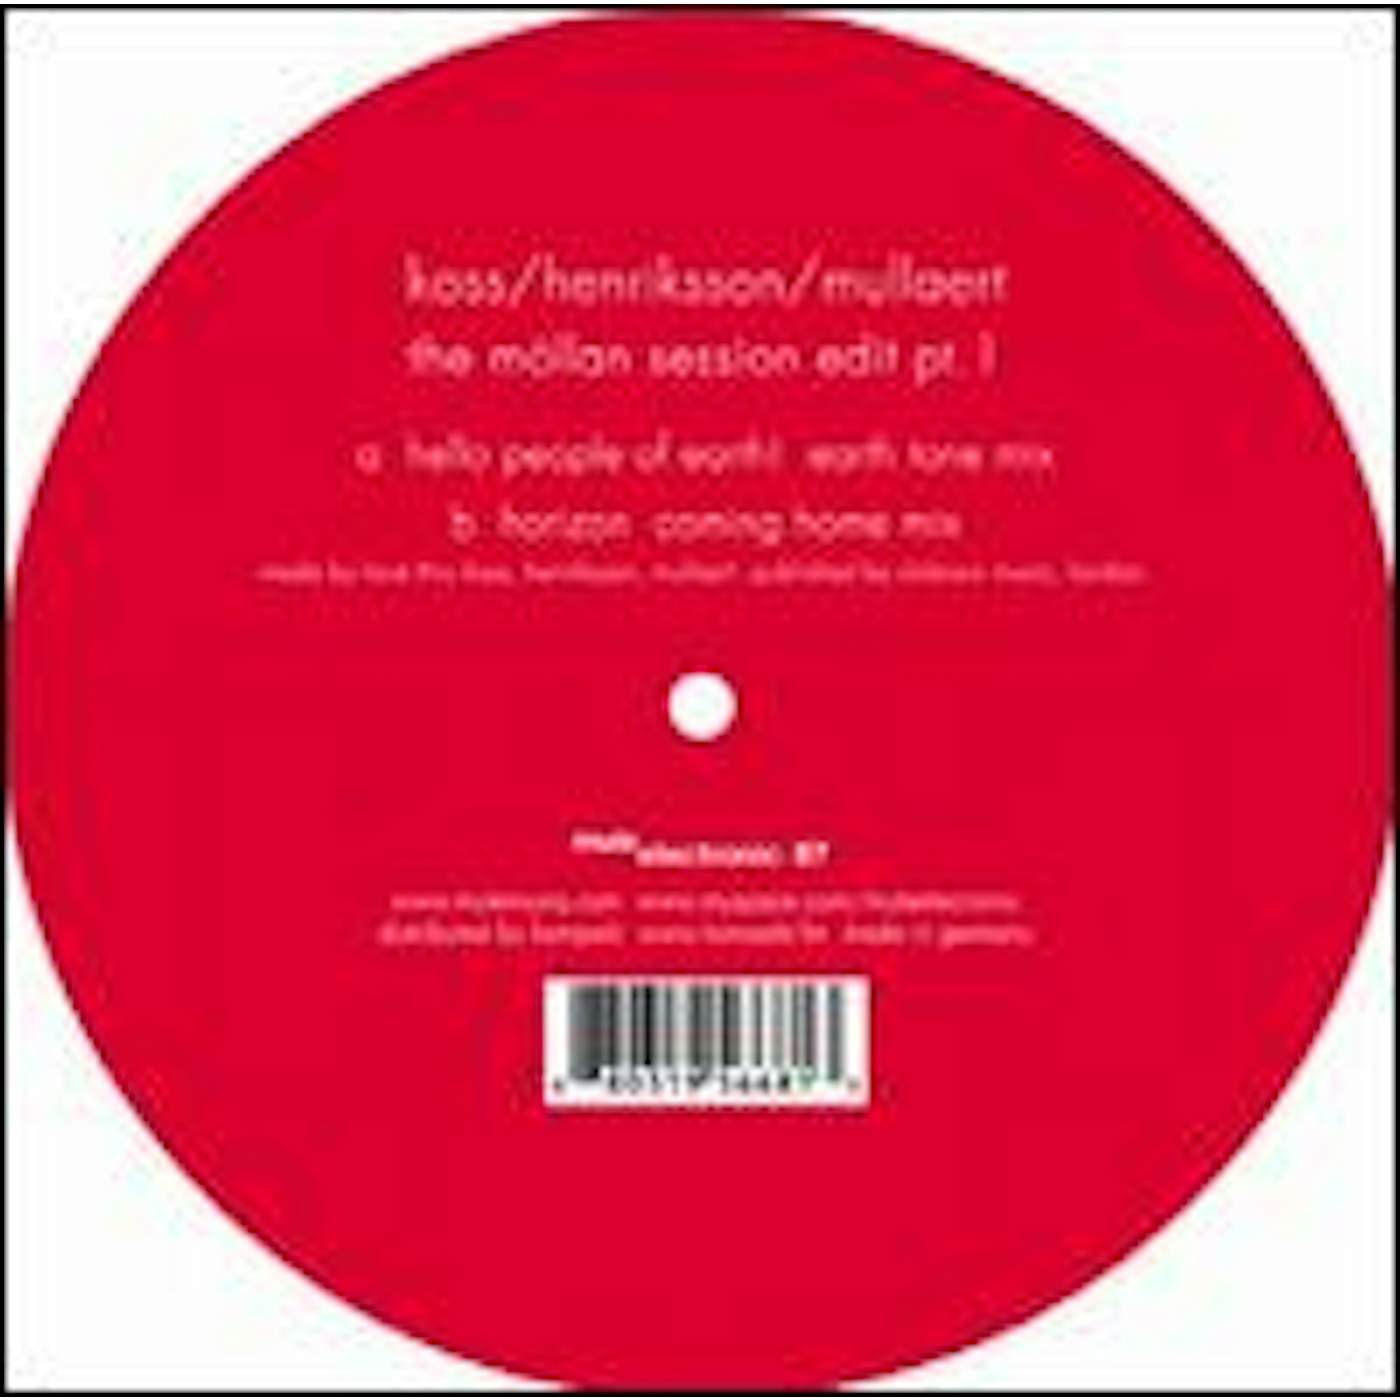 Koss / Henriksson / Mullaert MOLLAN SESSION EDIT 1 Vinyl Record